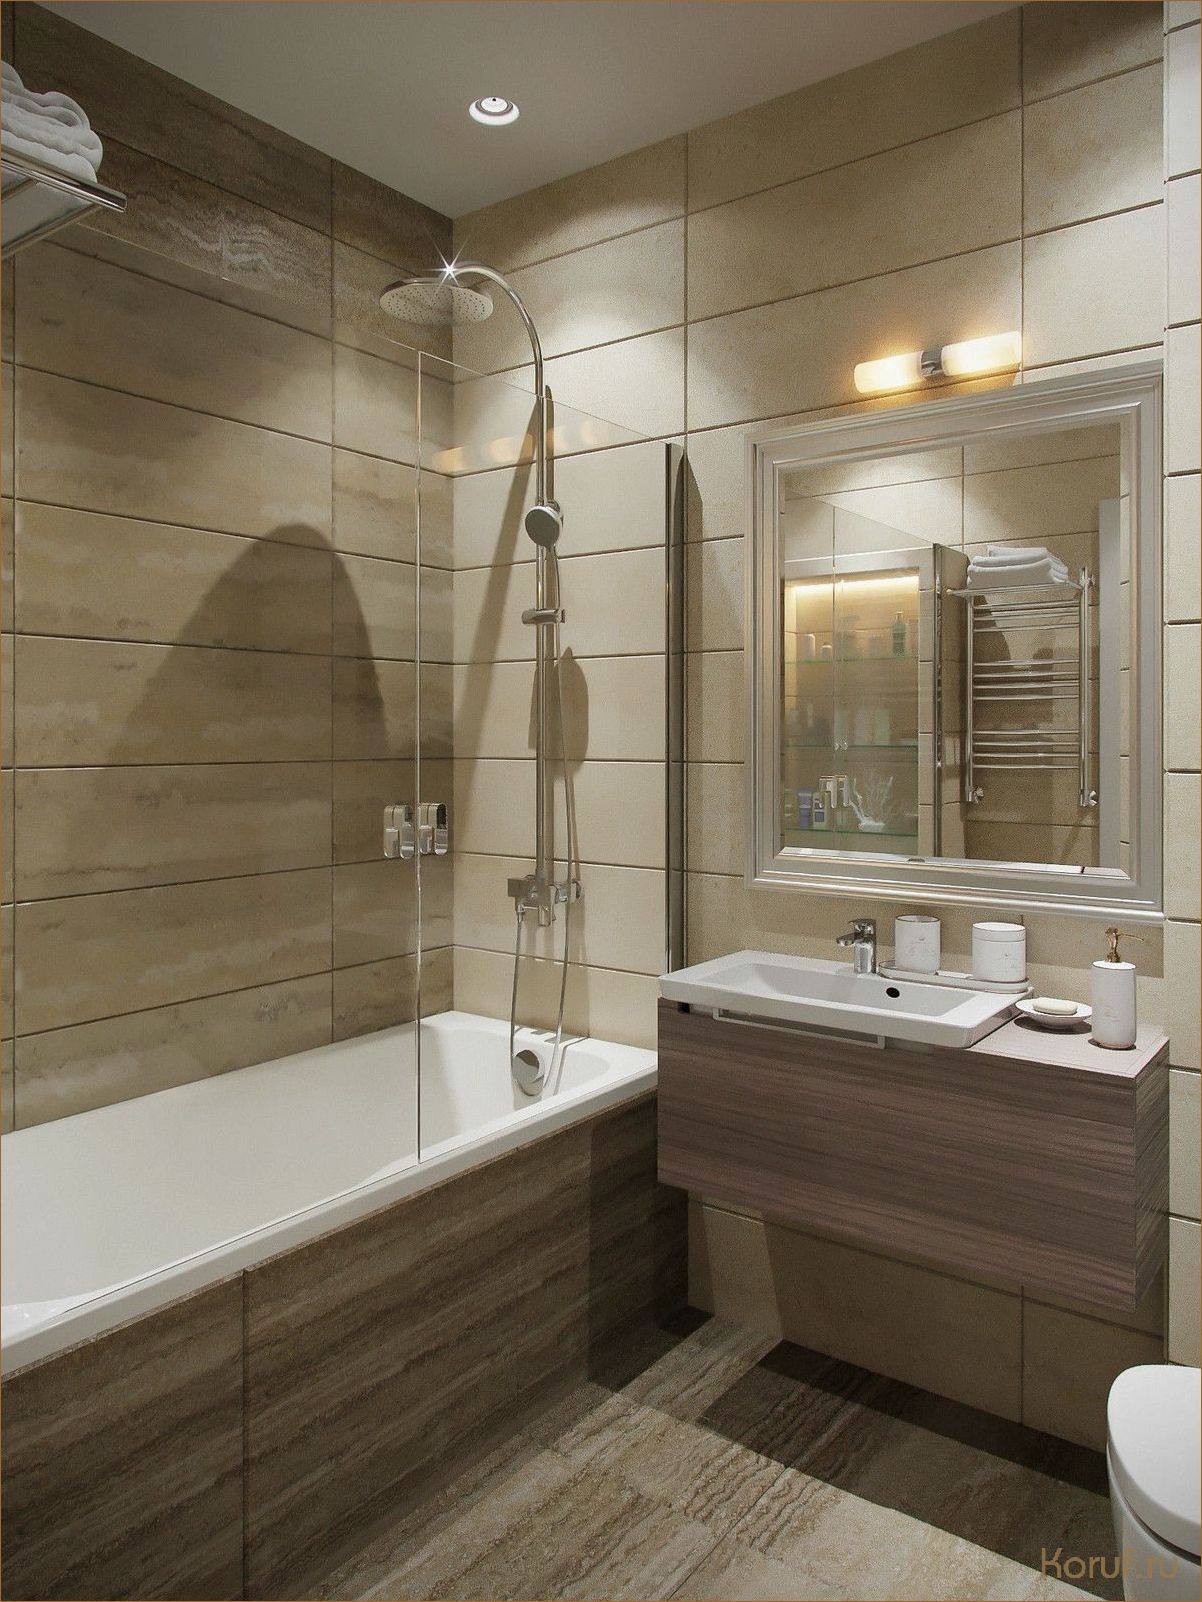 Идеальное сочетание функциональности и эстетики: знакомимся с встраиваемым туалетом в современном дизайне интерьера